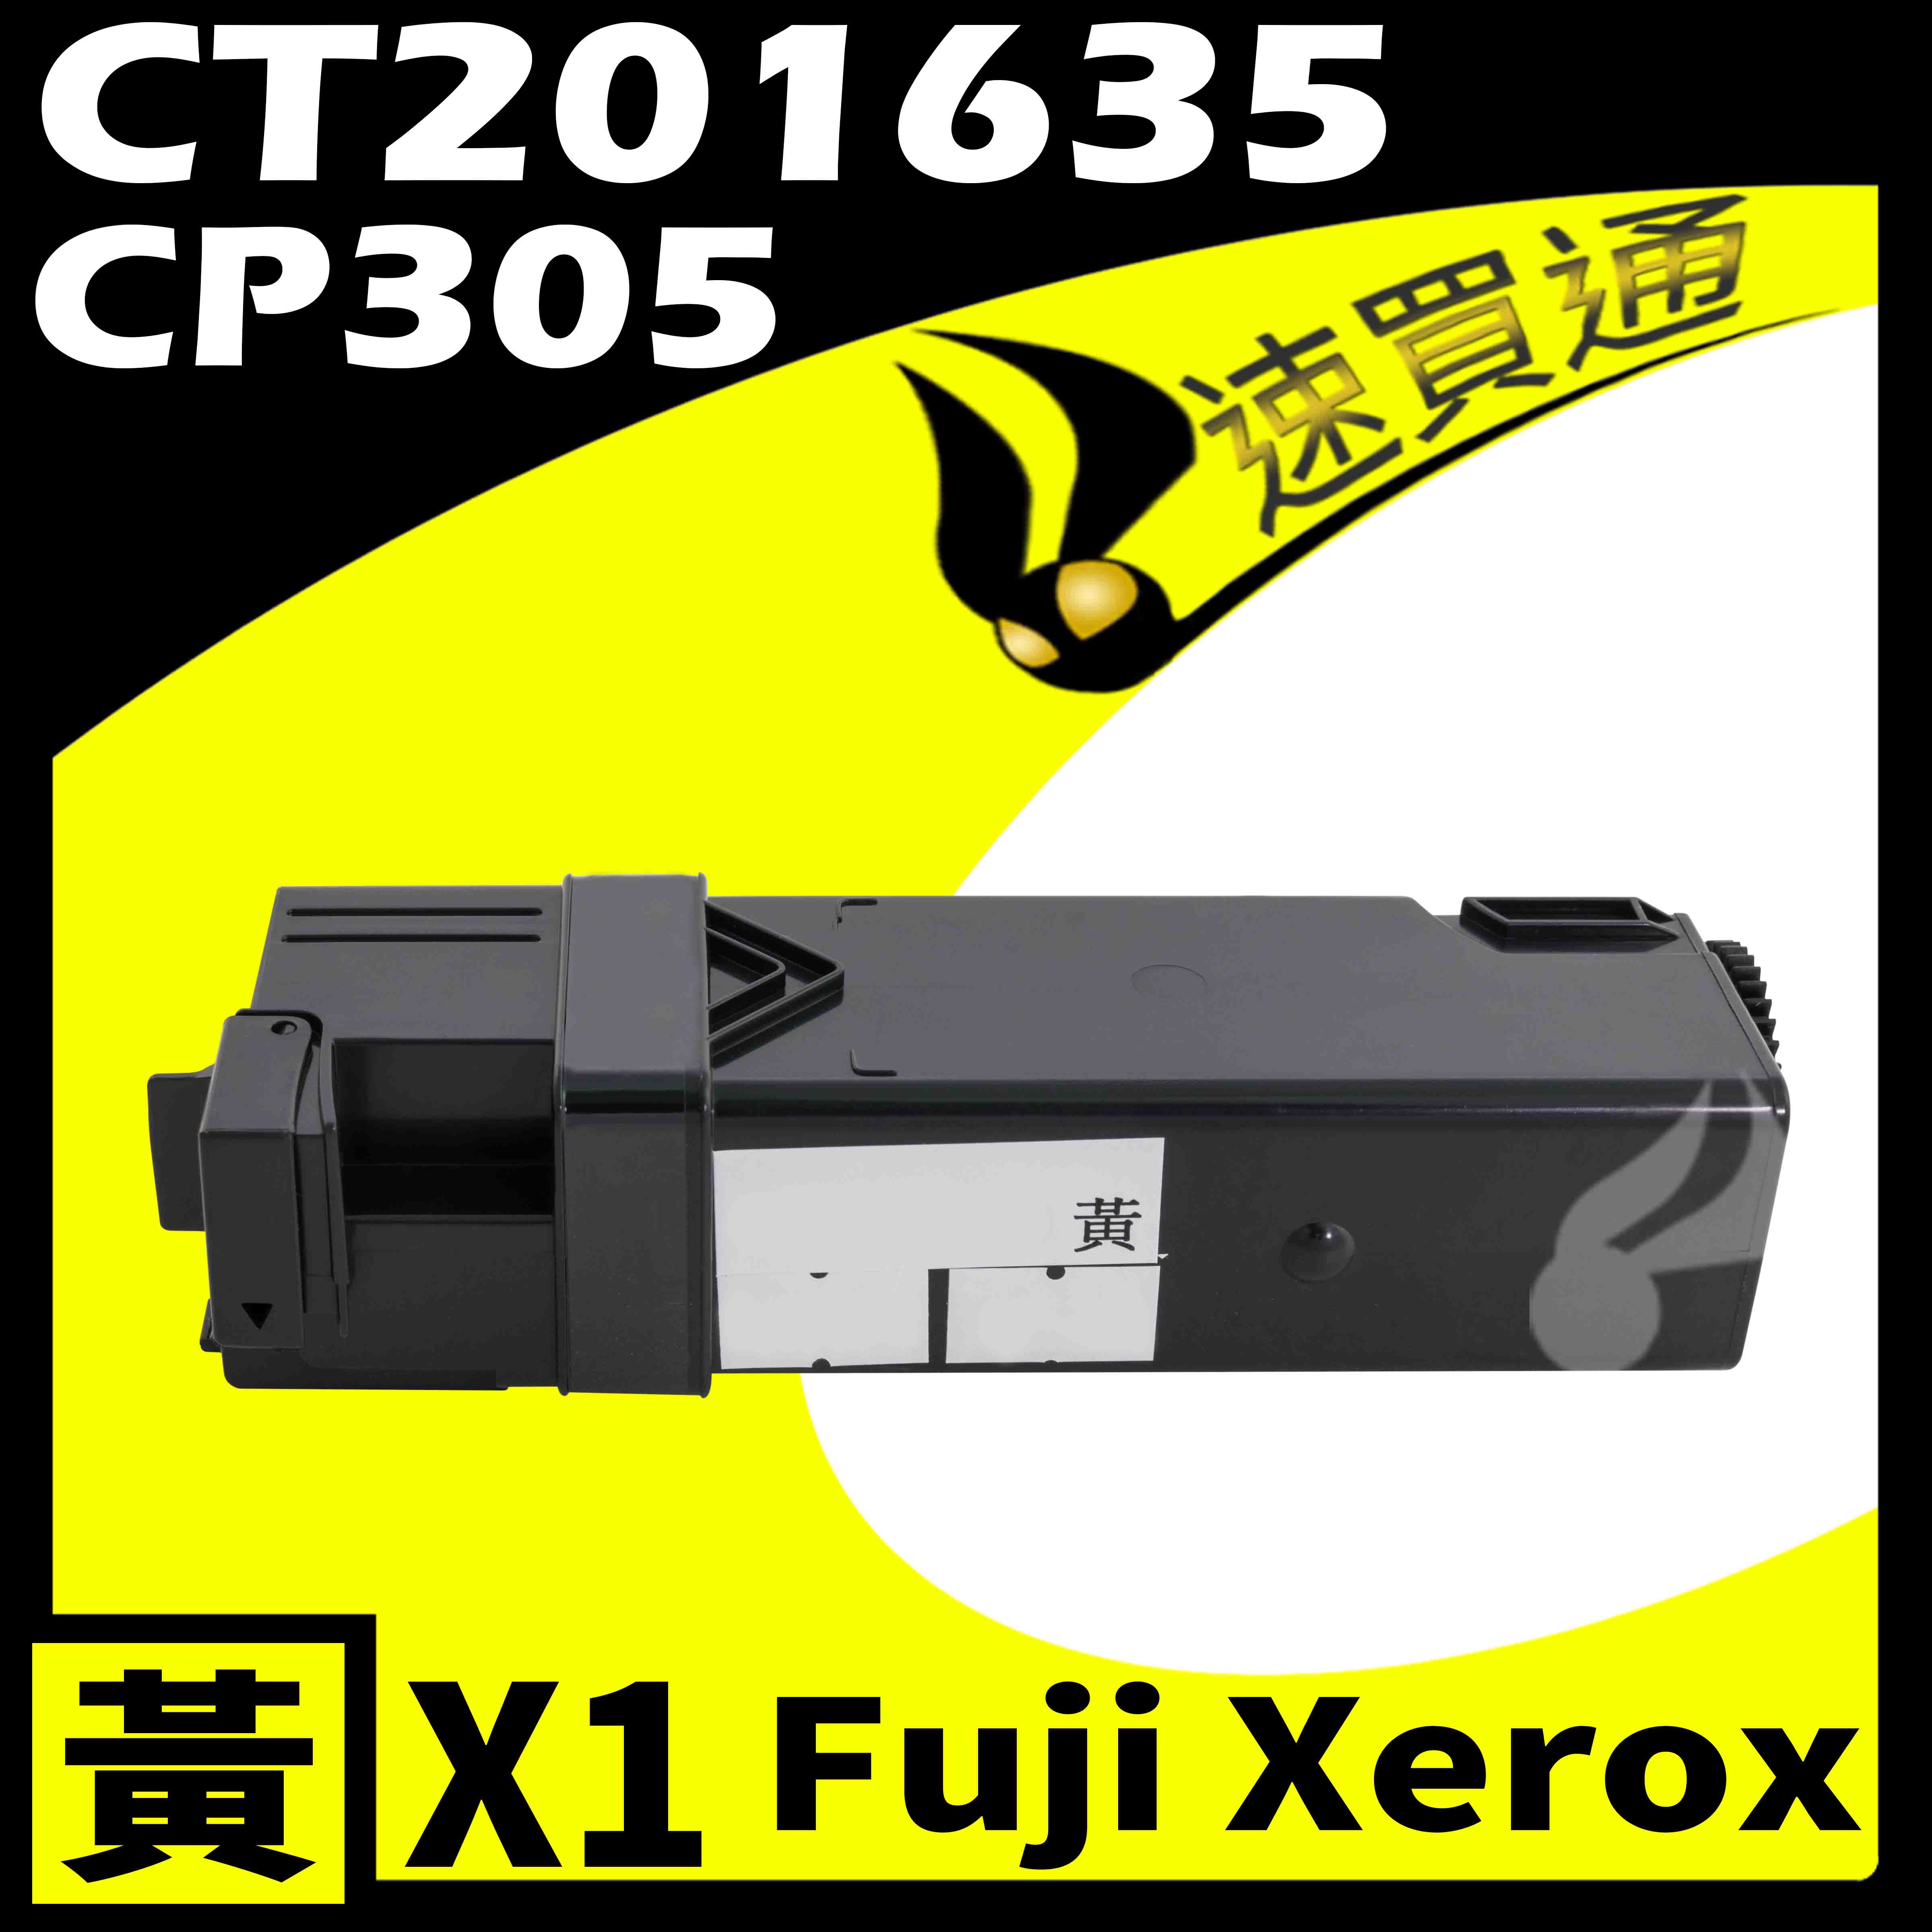 【速買通】Fuji Xerox CP305/CT201635 黃 相容彩色碳粉匣 適用 CP305d/CM305d